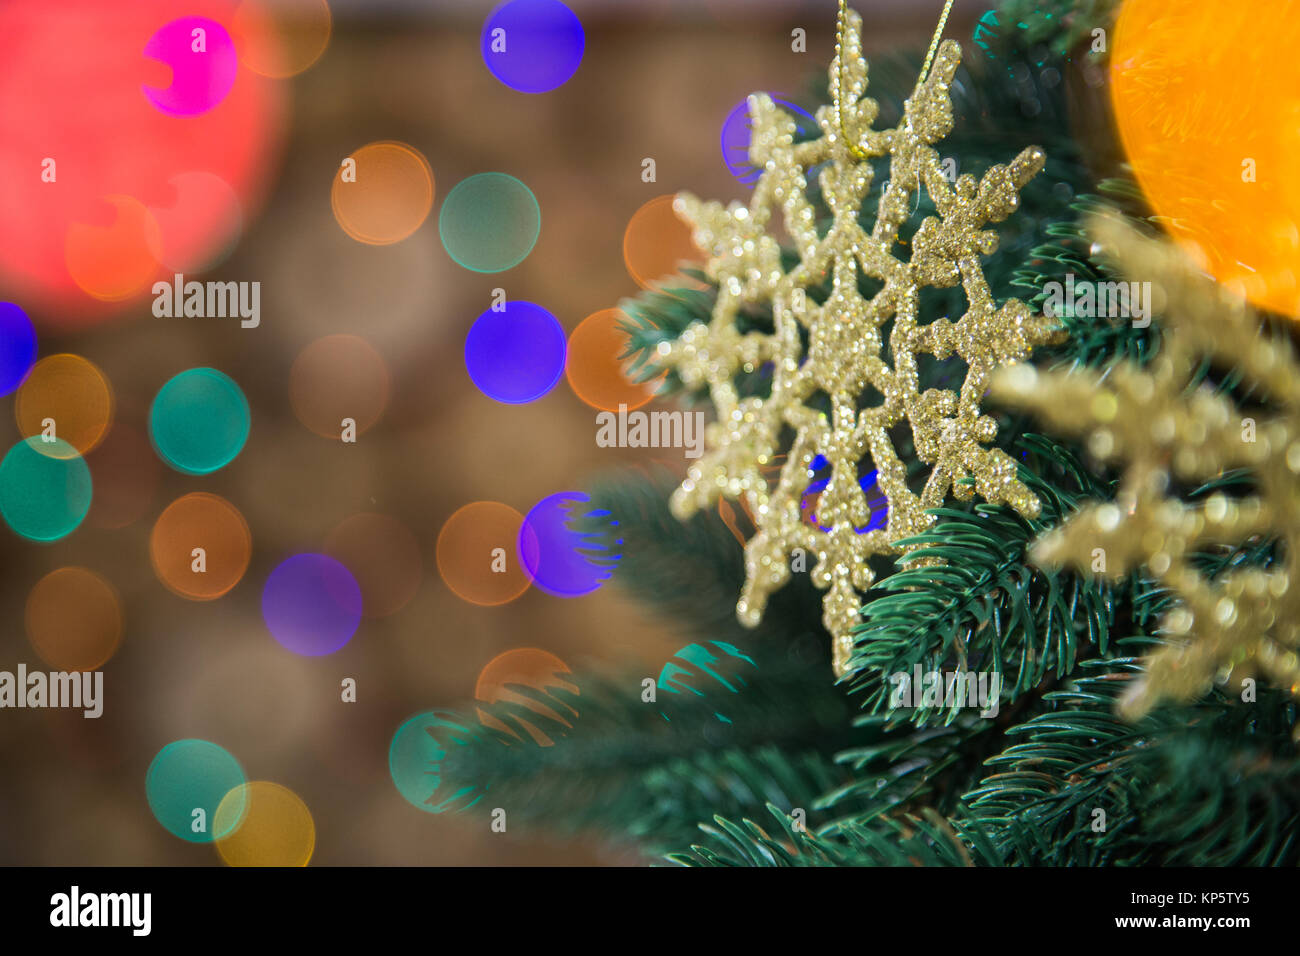 Detailansicht der wunderschöne Goldene runde Schneeflocken hängend an grünen Weihnachtsbaum Niederlassungen in Home Interior. Dekorierte Tanne an verschwommen Lichter von Co Stockfoto